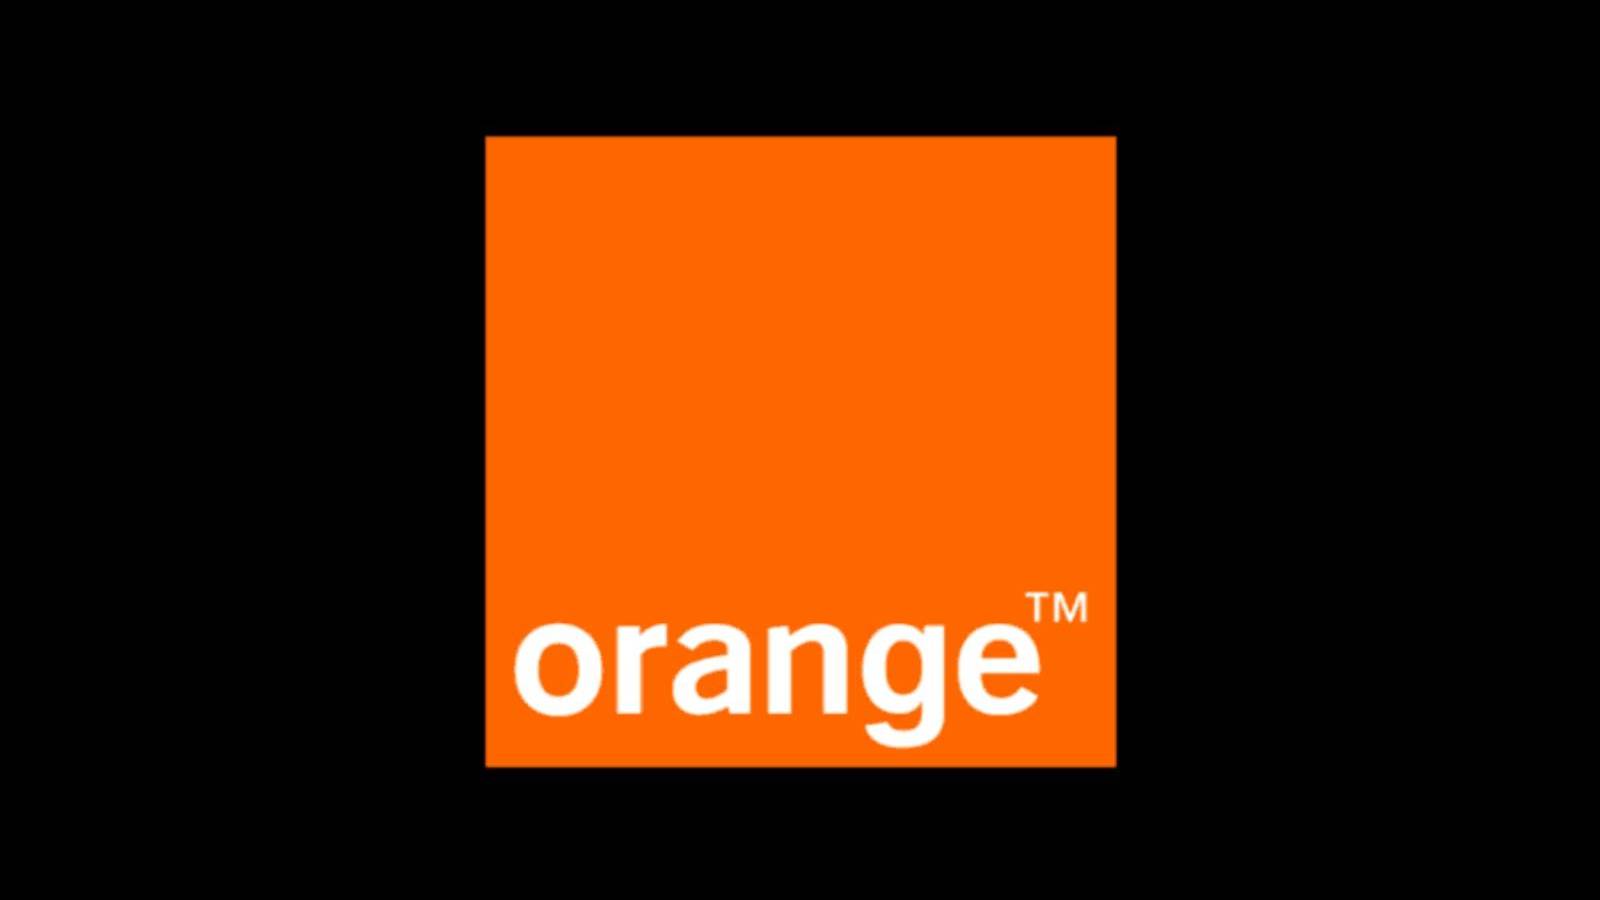 Orange ogłasza nową ofertę roamingu w EOG dla klientów z Rumunii